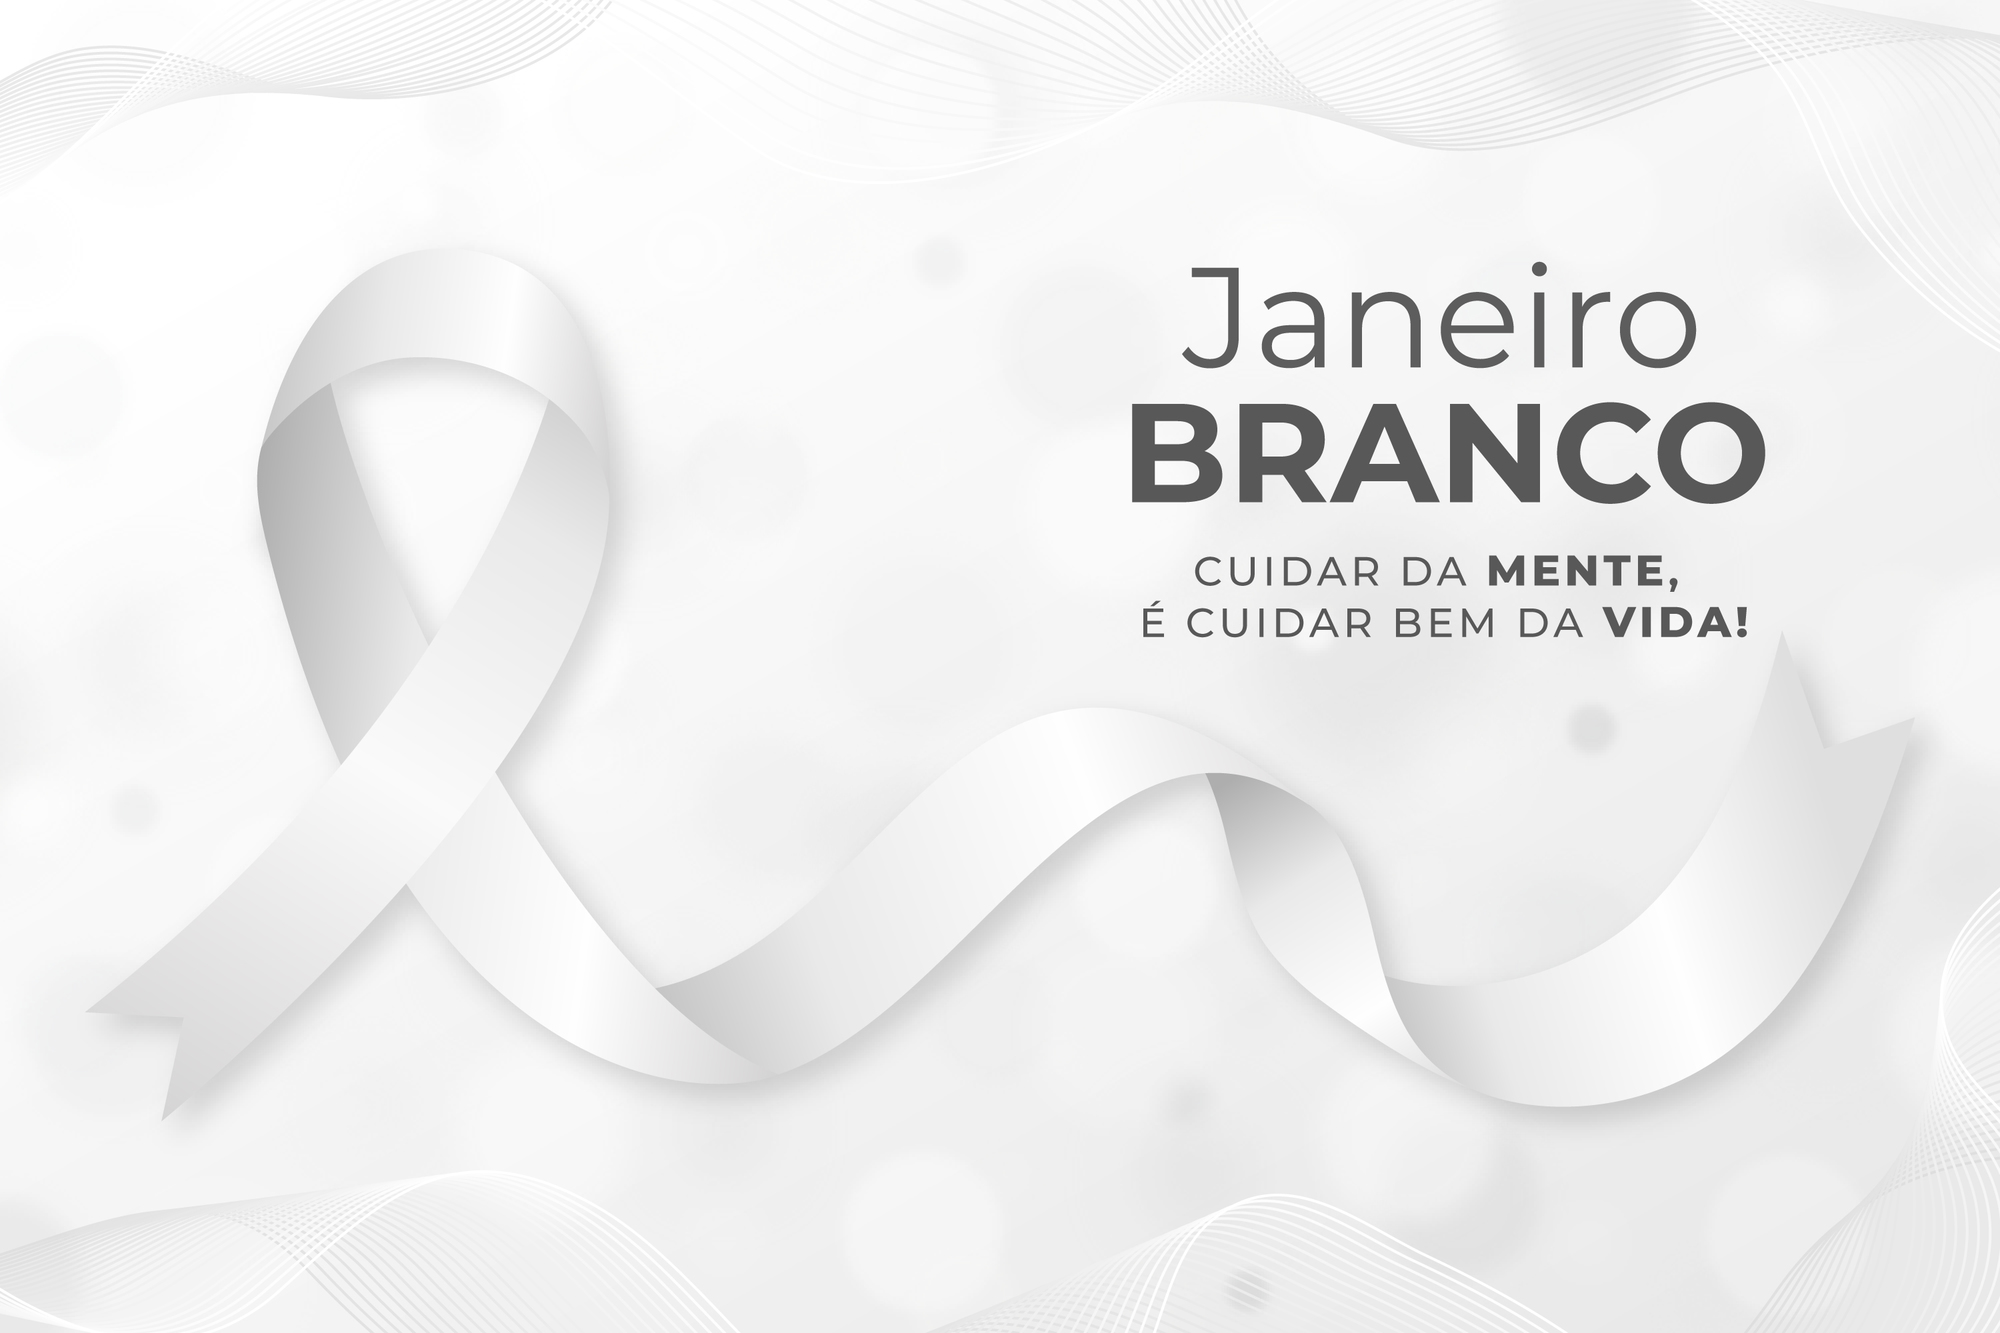 Conheça a campanha de conscientização Janeiro Branco JD1 Notícias